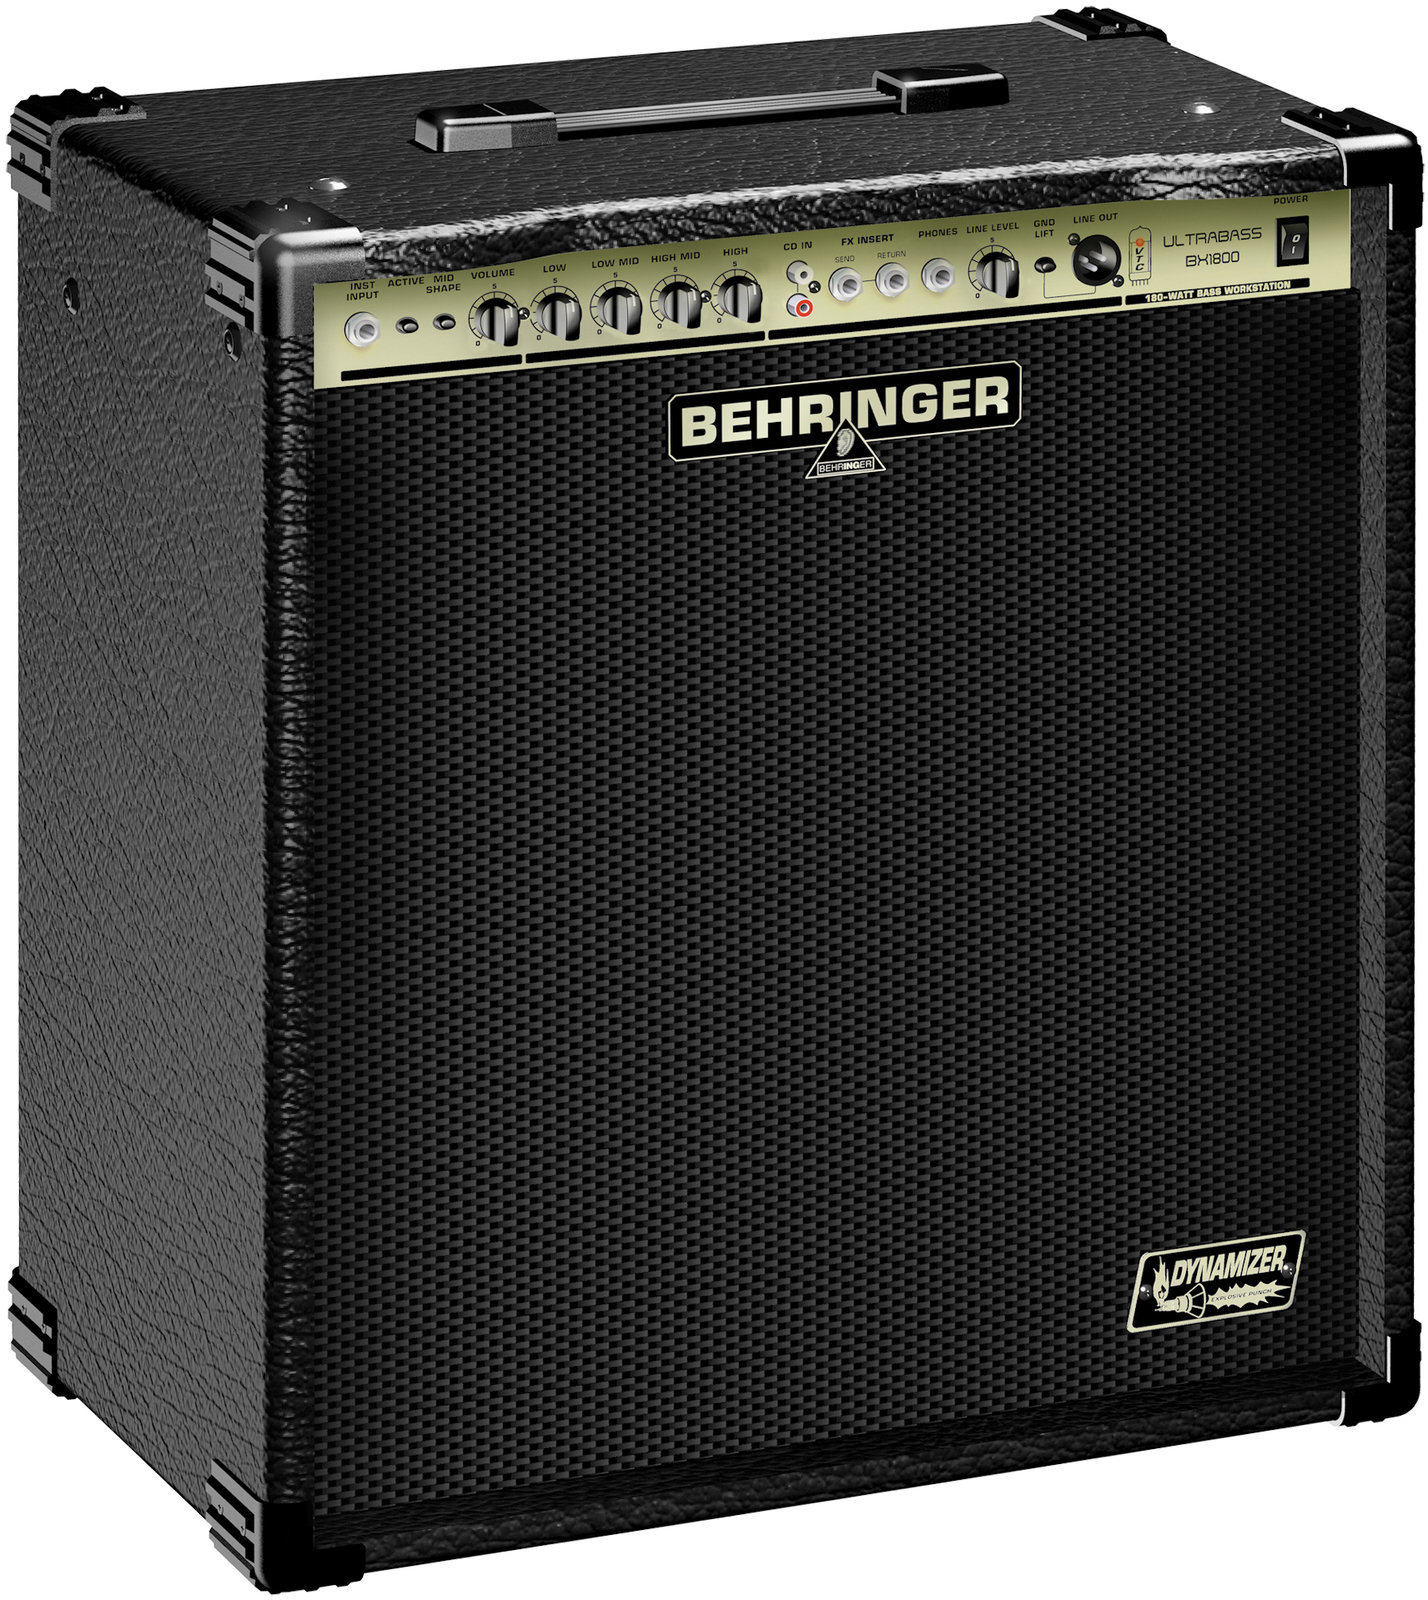 Bass Combo Behringer BX1800 Ultrabass